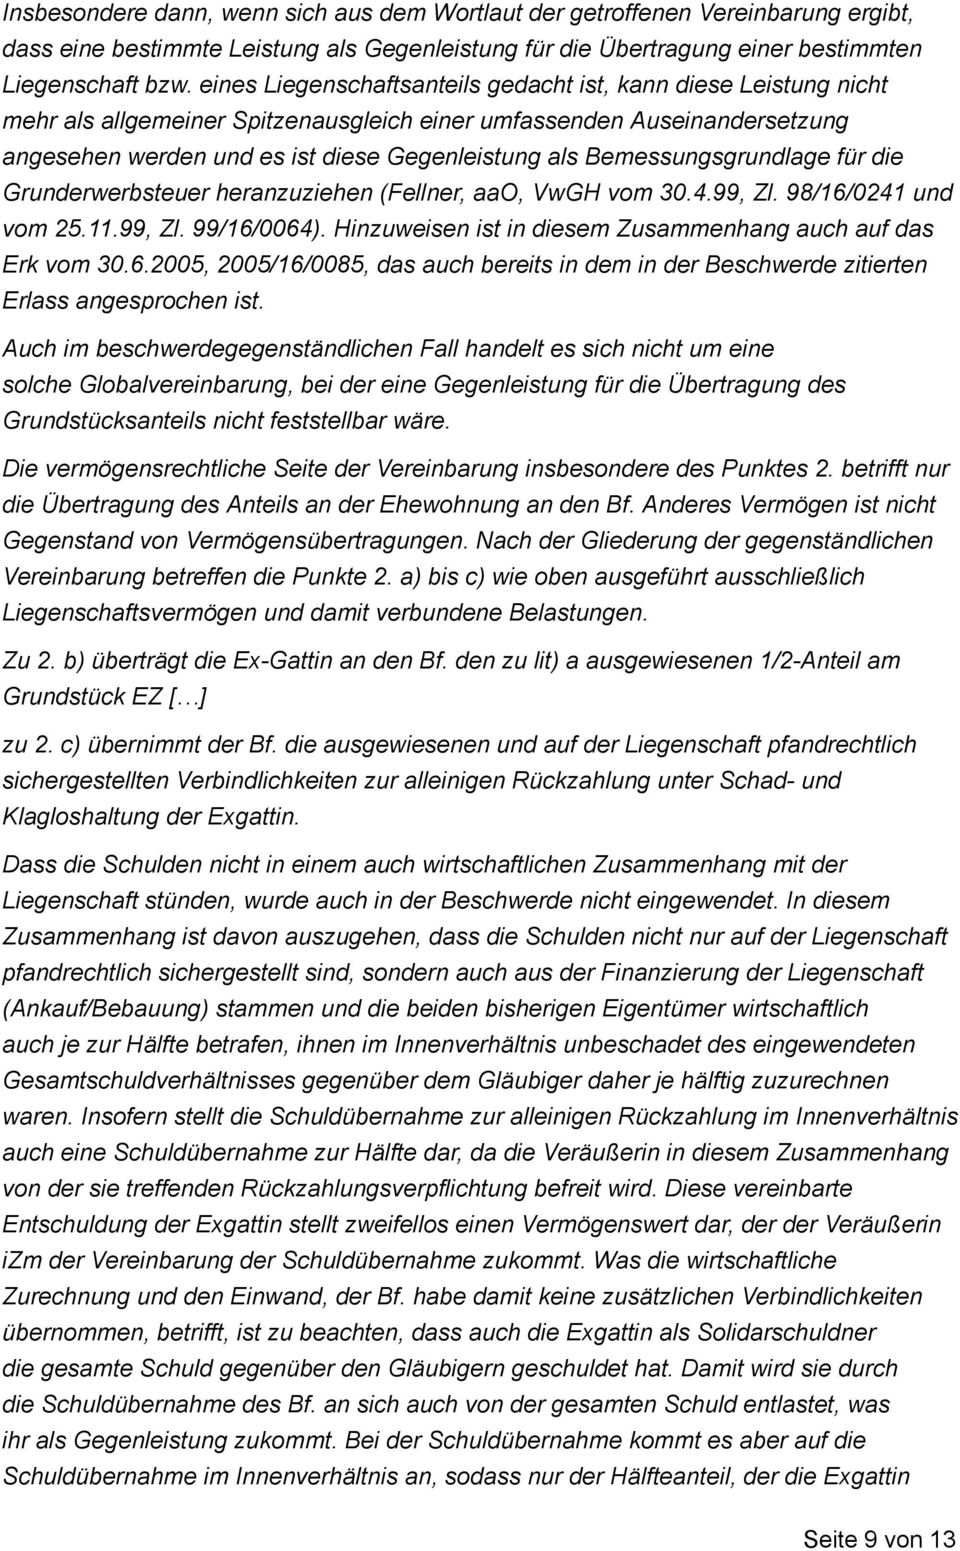 Bemessungsgrundlage für die Grunderwerbsteuer heranzuziehen (Fellner, aao, VwGH vom 30.4.99, Zl. 98/16/0241 und vom 25.11.99, Zl. 99/16/0064).